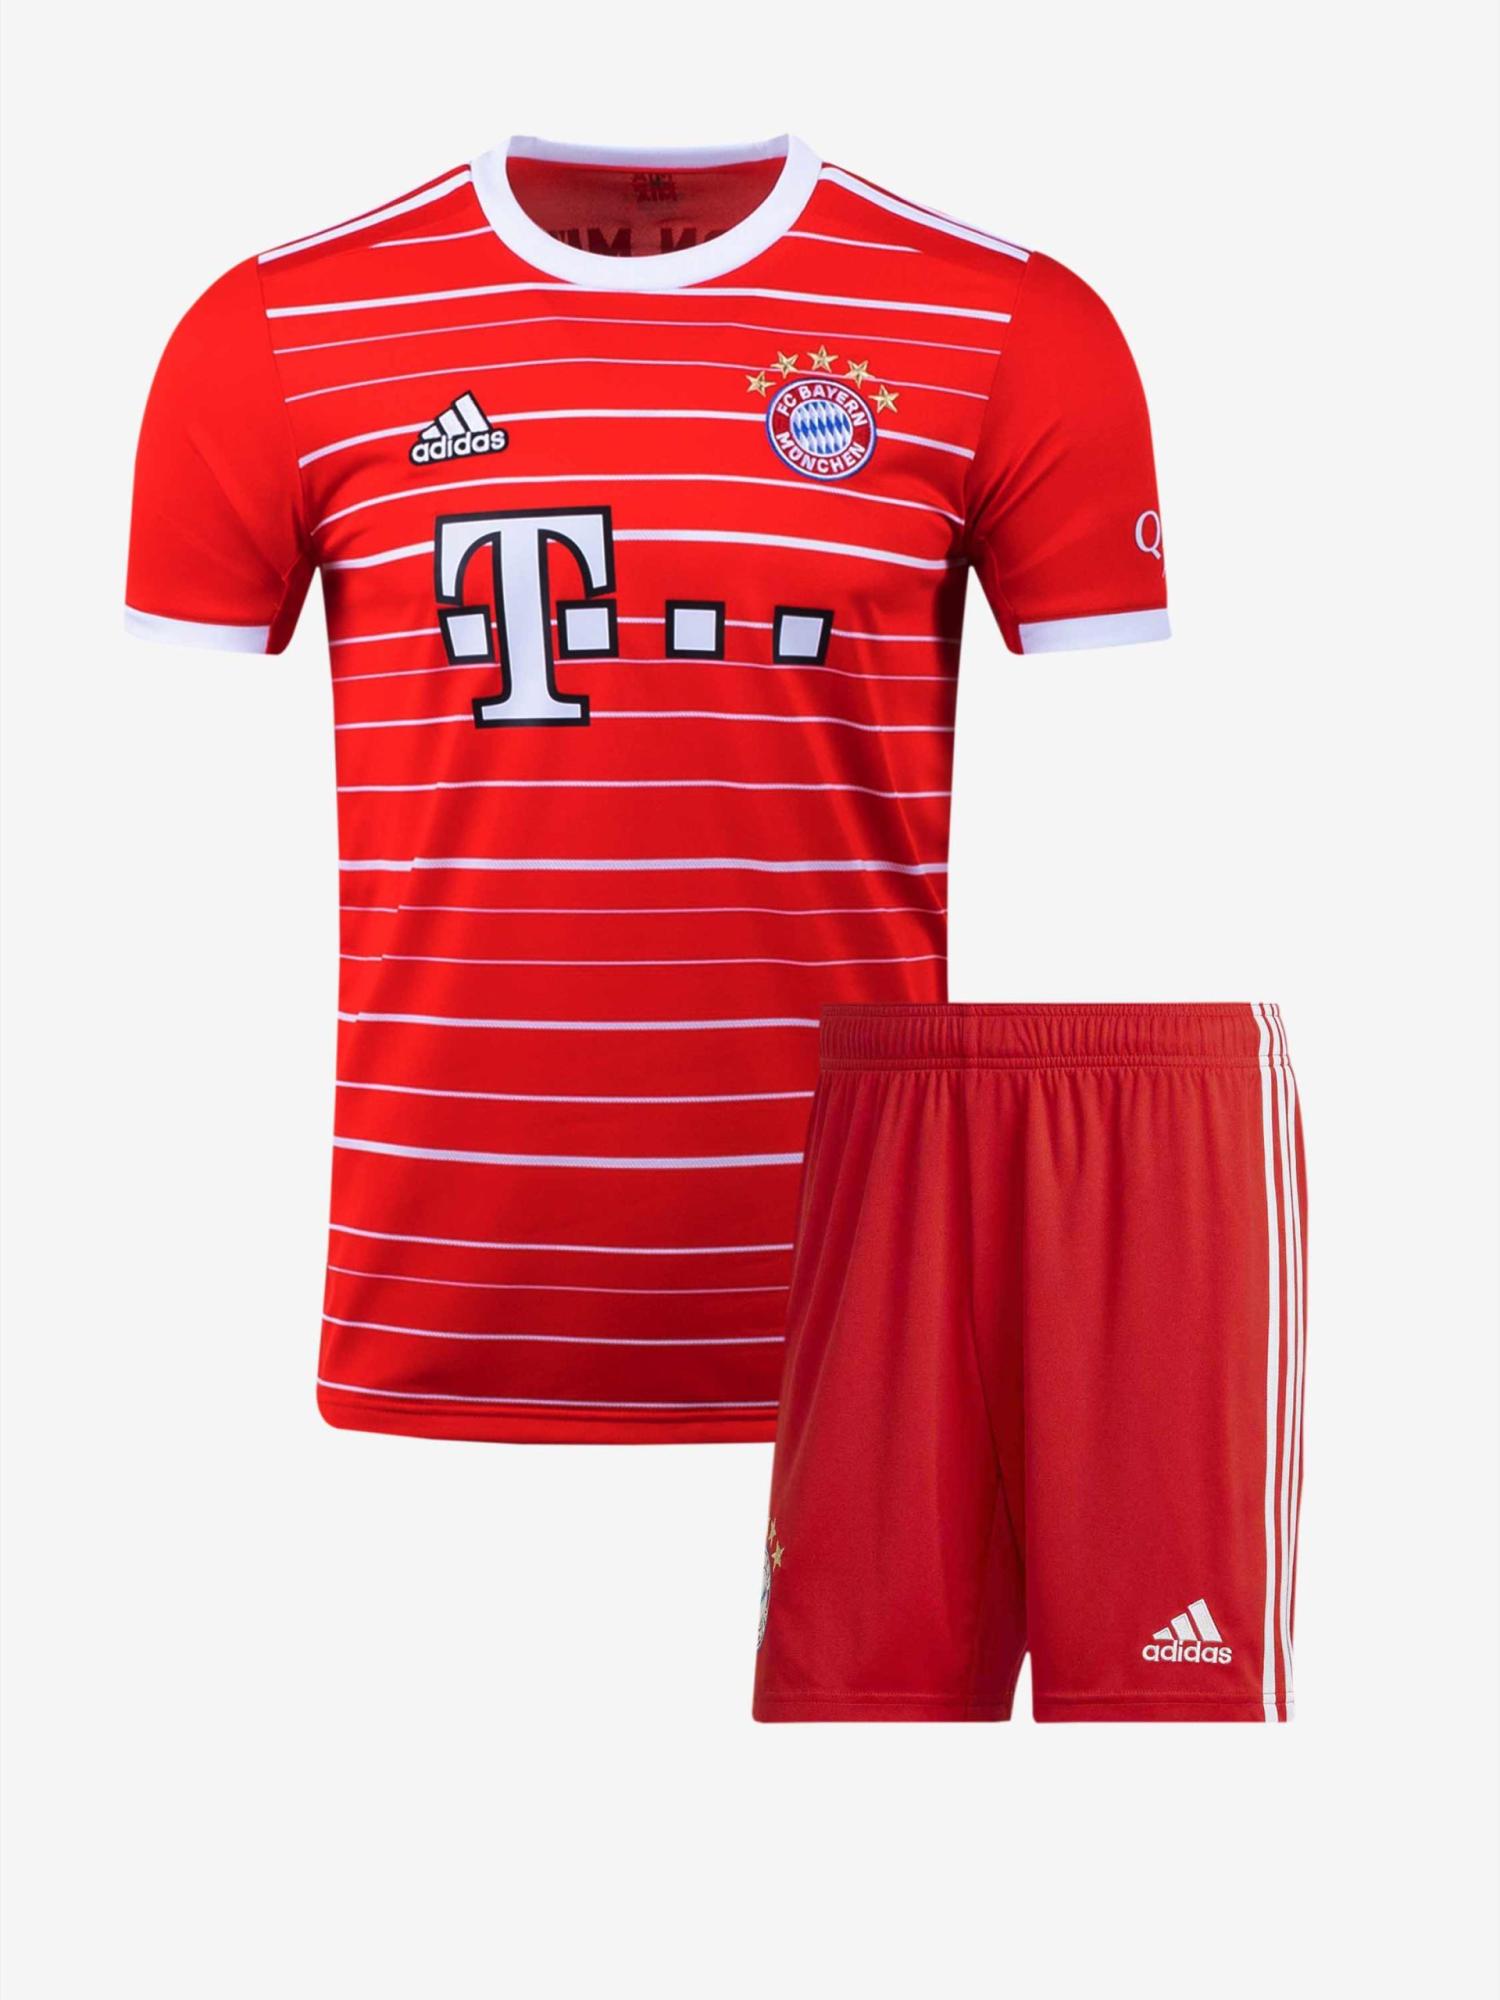 Bayern-Munich-Home-Jersey-And-Shorts-22-23-Season